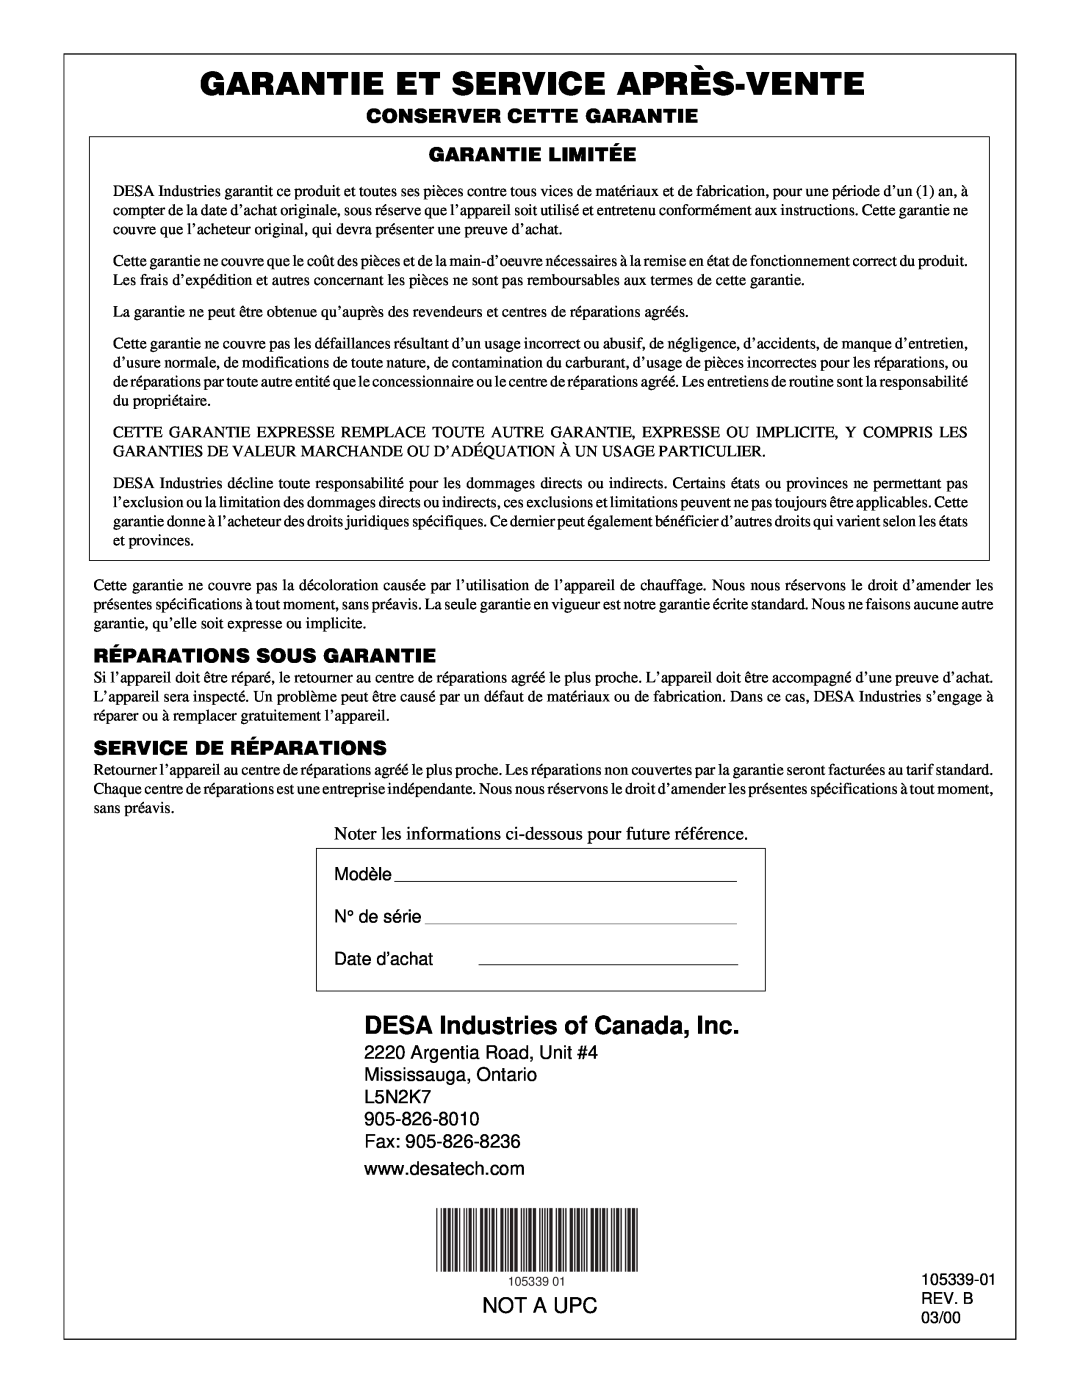 Desa RCLP50VA Garantie Et Service Après-Vente, DESA Industries of Canada, Inc, Not A Upc, Modèle N de série Date d’achat 